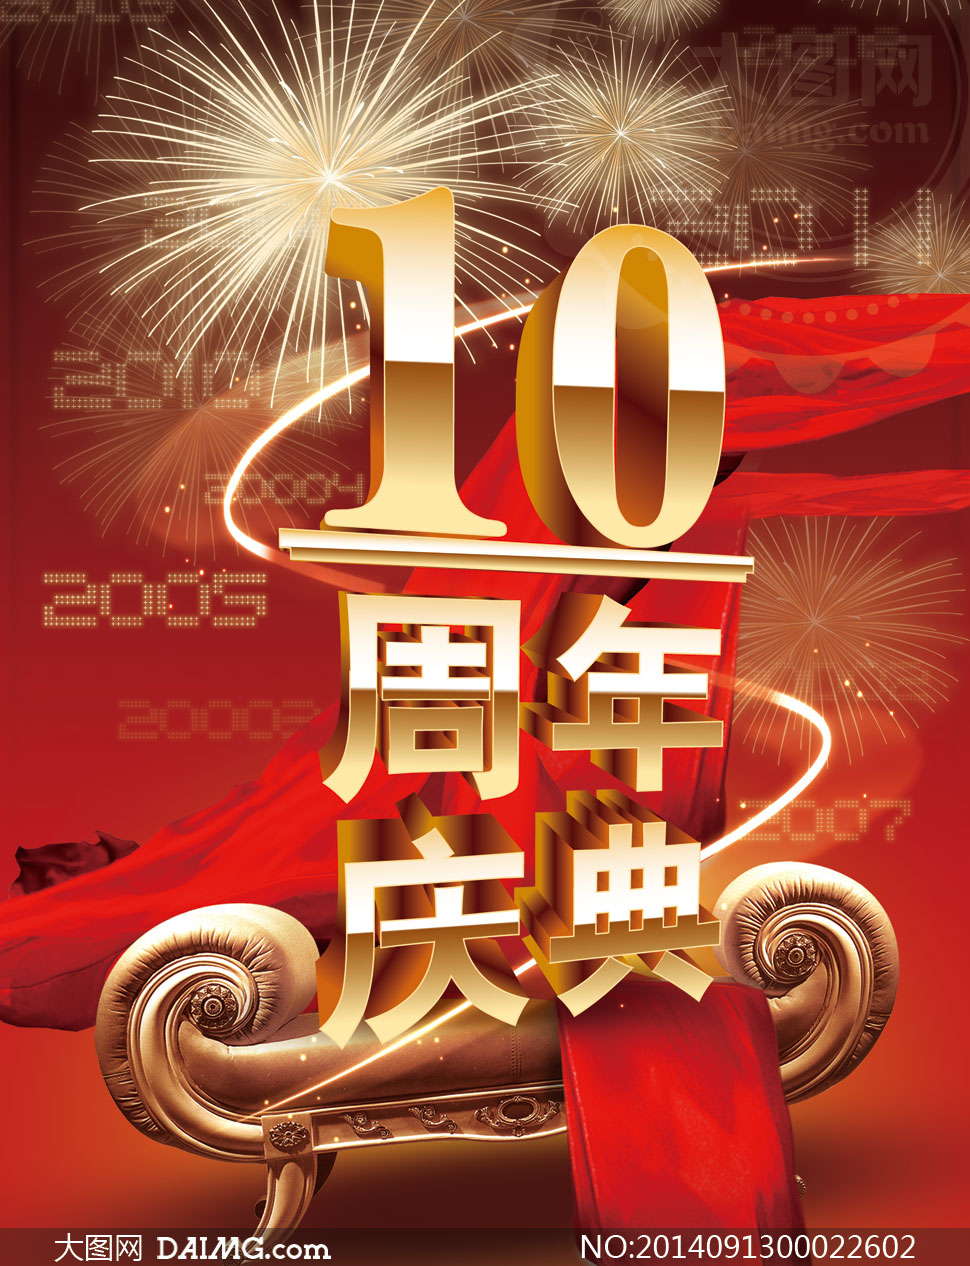 10周年庆典喜庆海报设计psd源文件